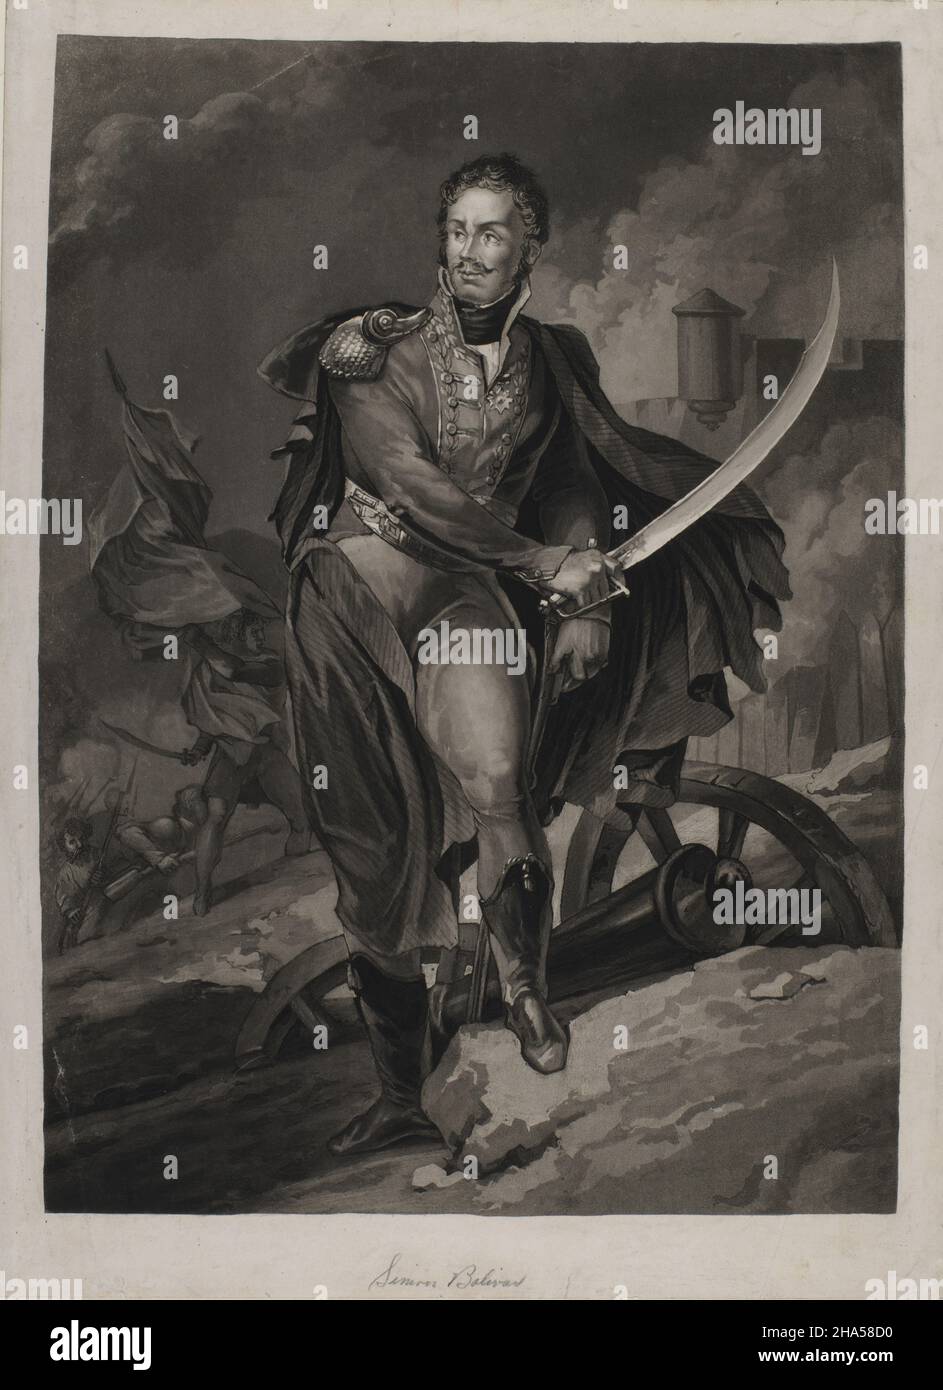 Dessin d'époque du leader militaire et politique vénézuélien Simon Bolivar photographié sur un champ de bataille portant un uniforme militaire et tenant une épée Banque D'Images